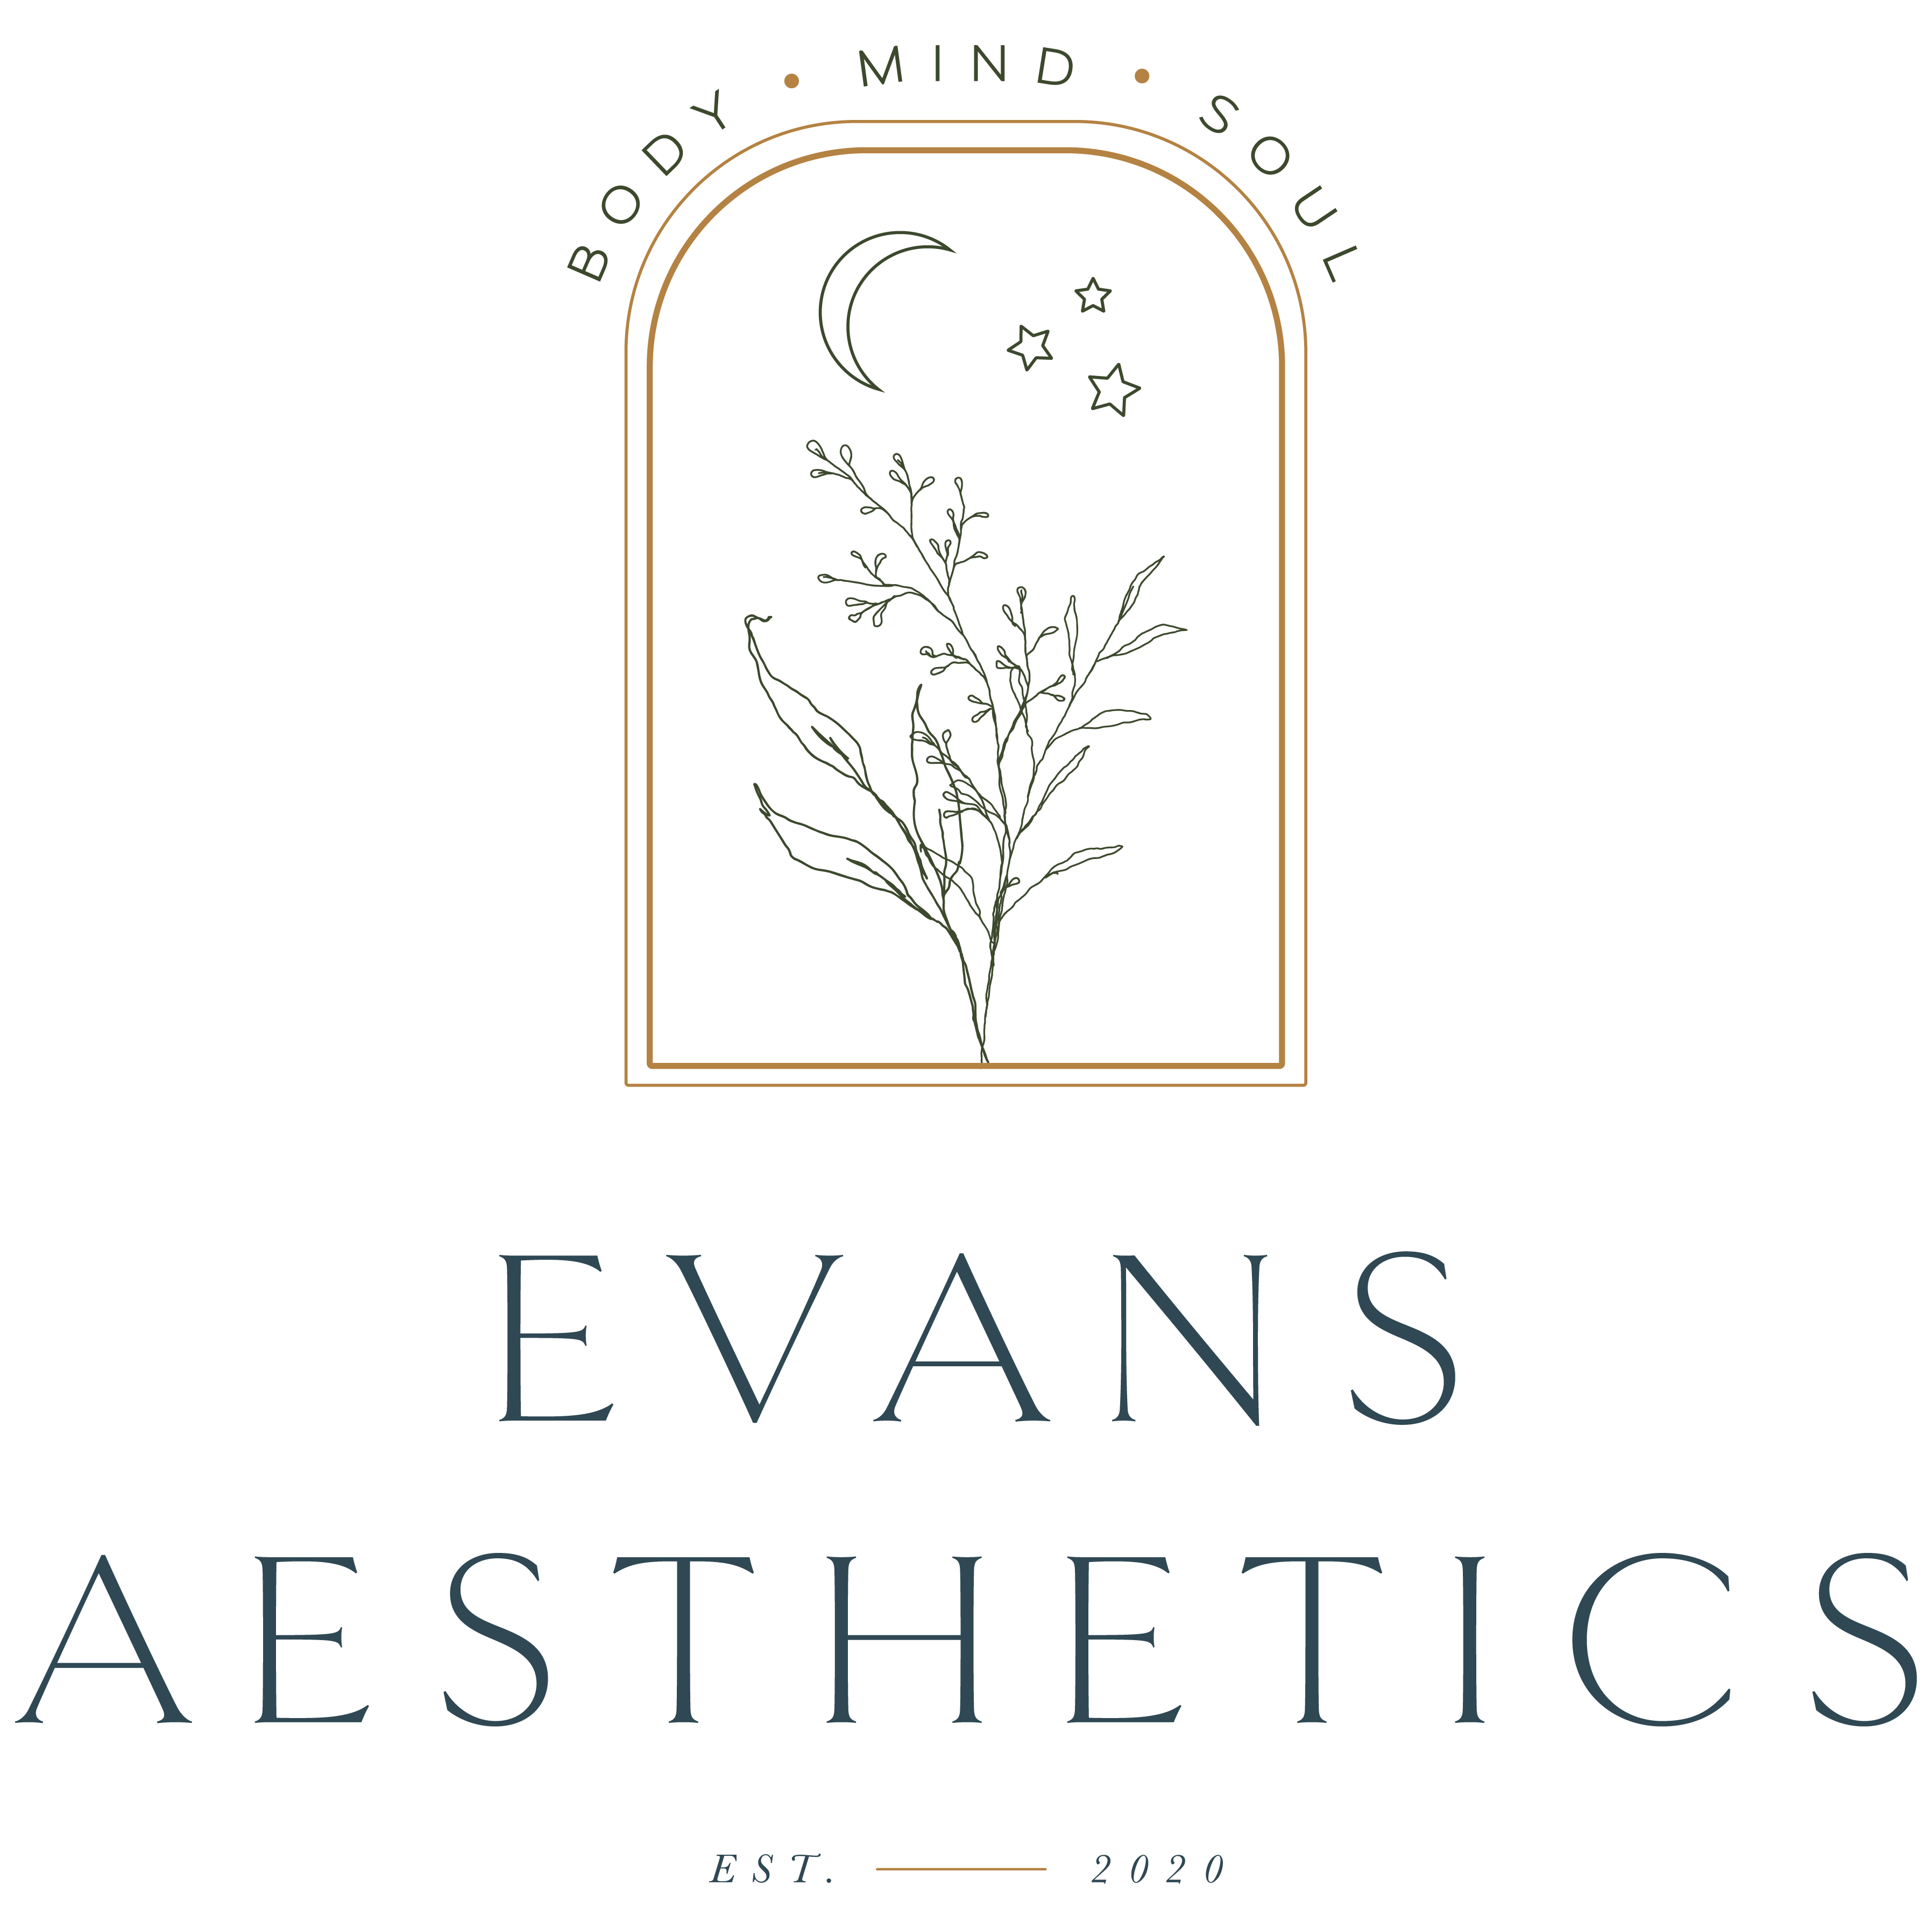 Evans Aesthetics